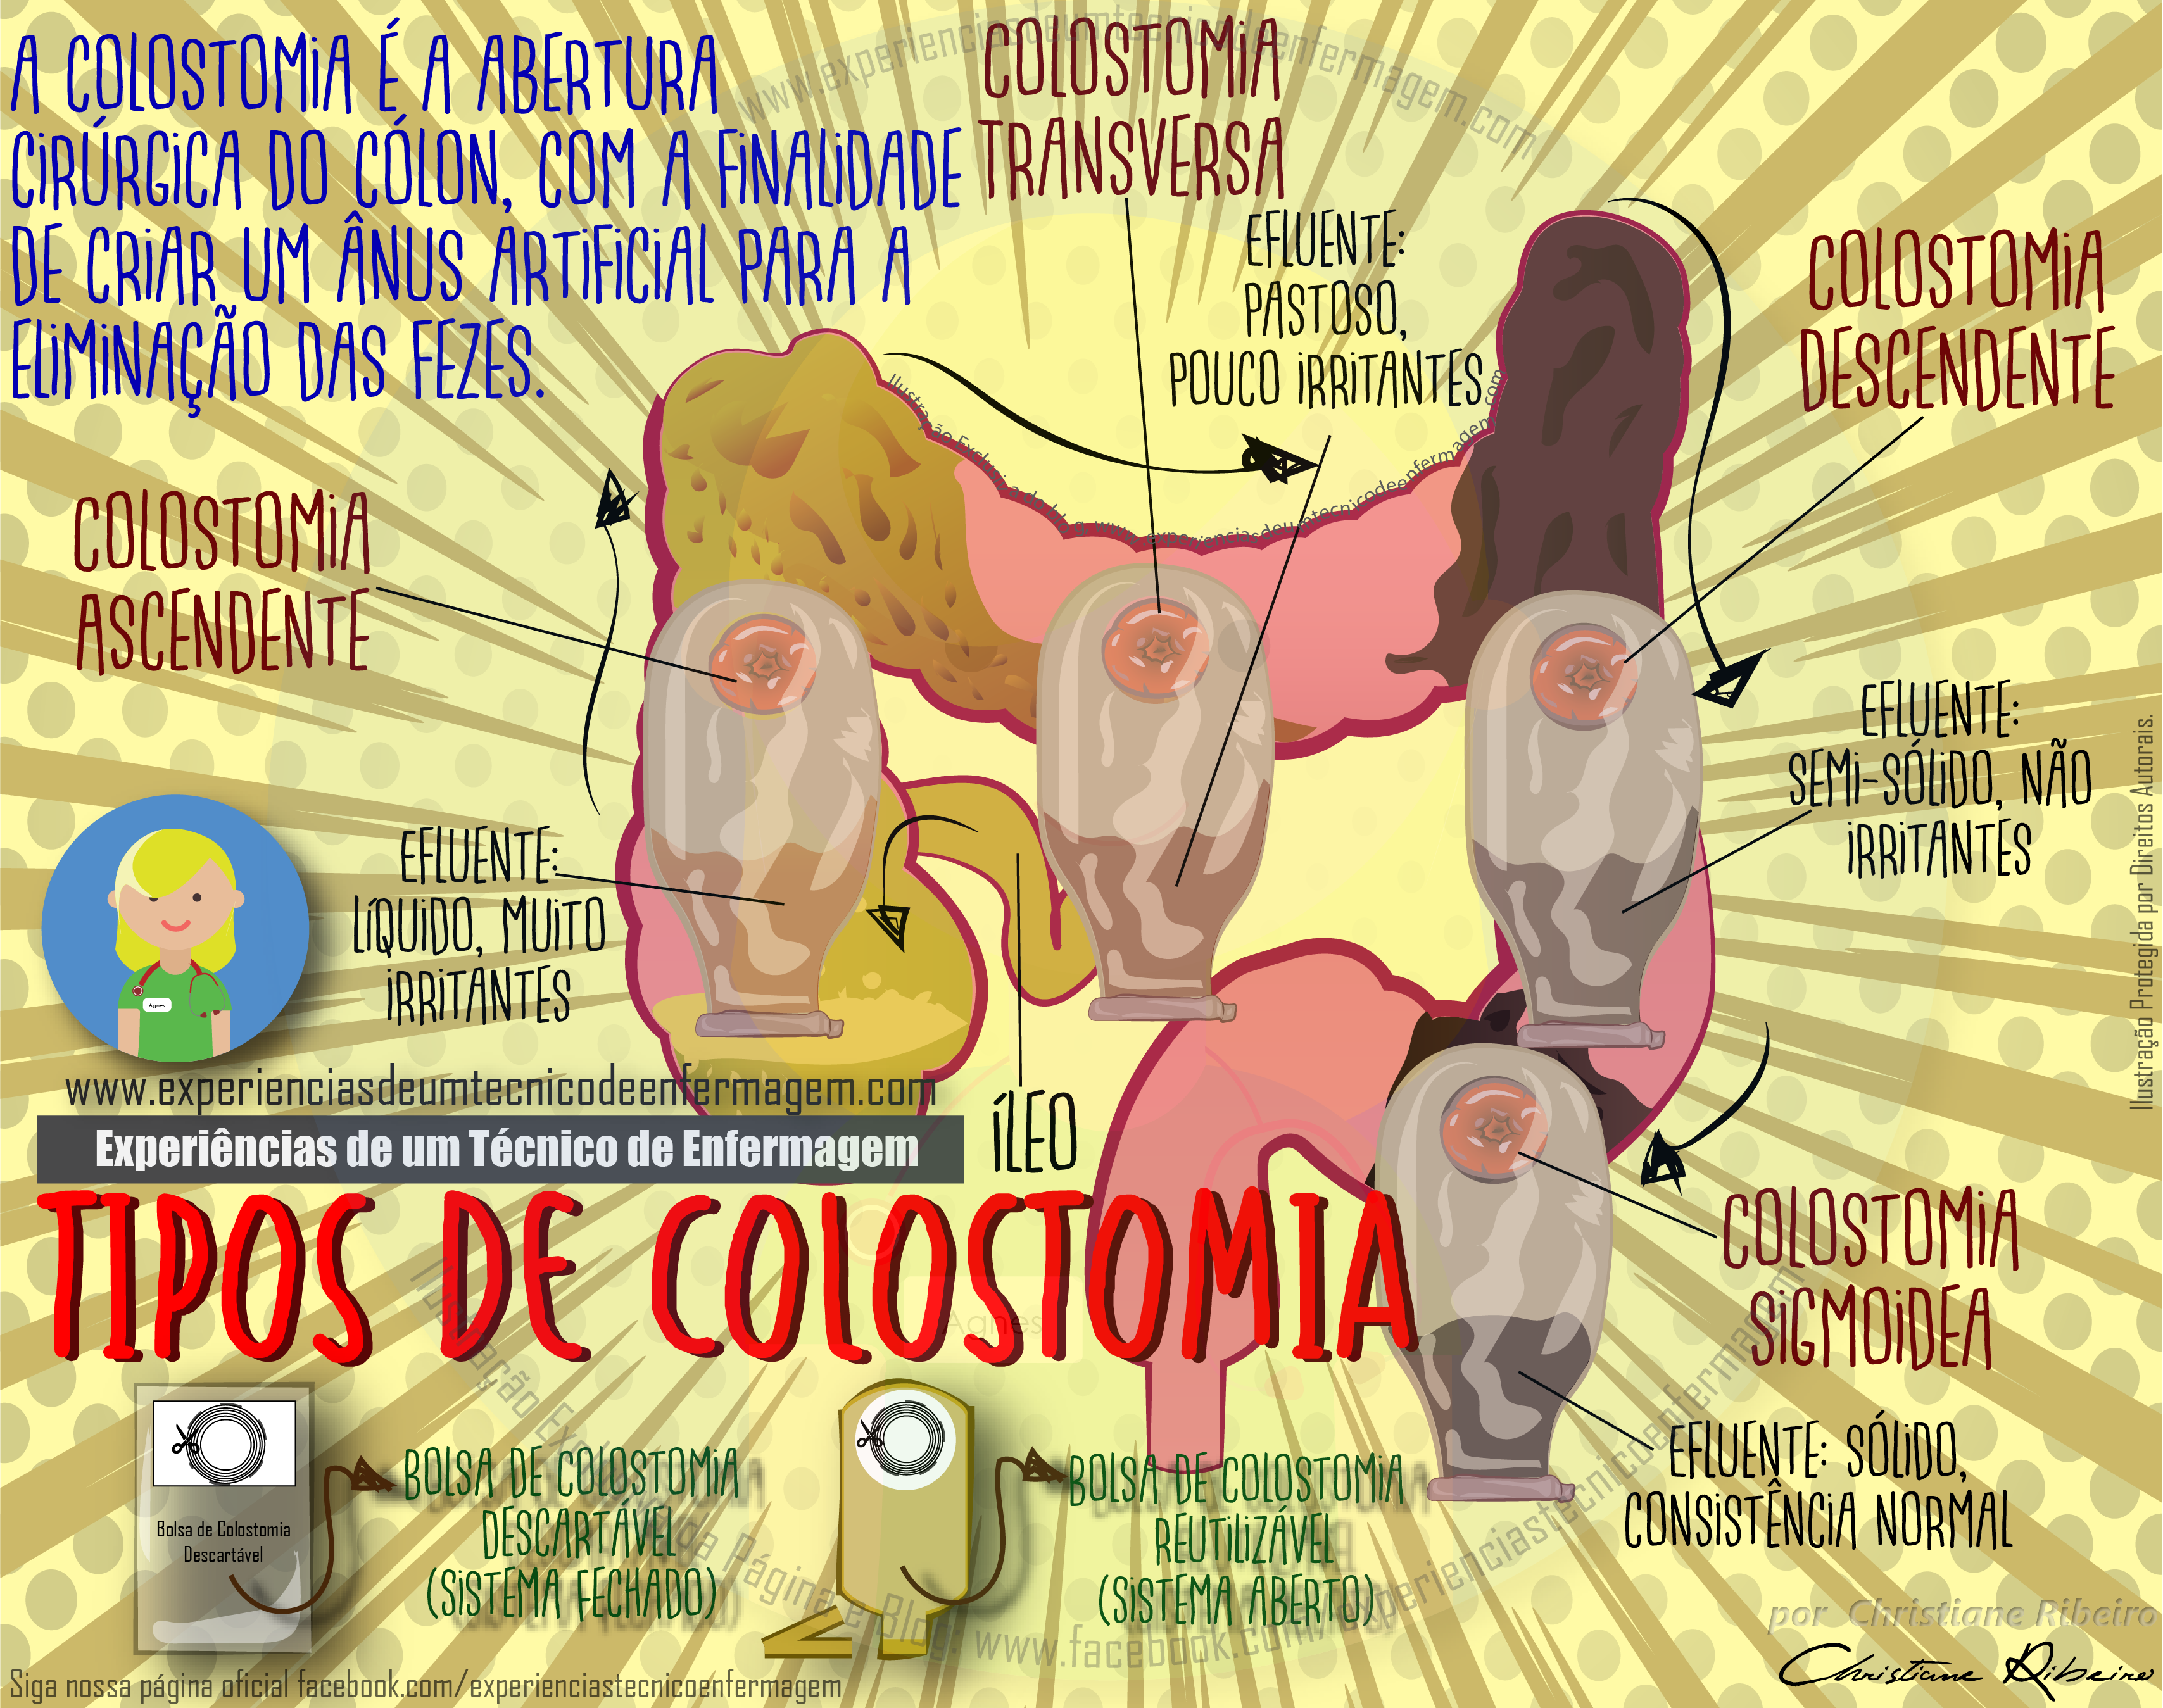 Colostomia: O que é?